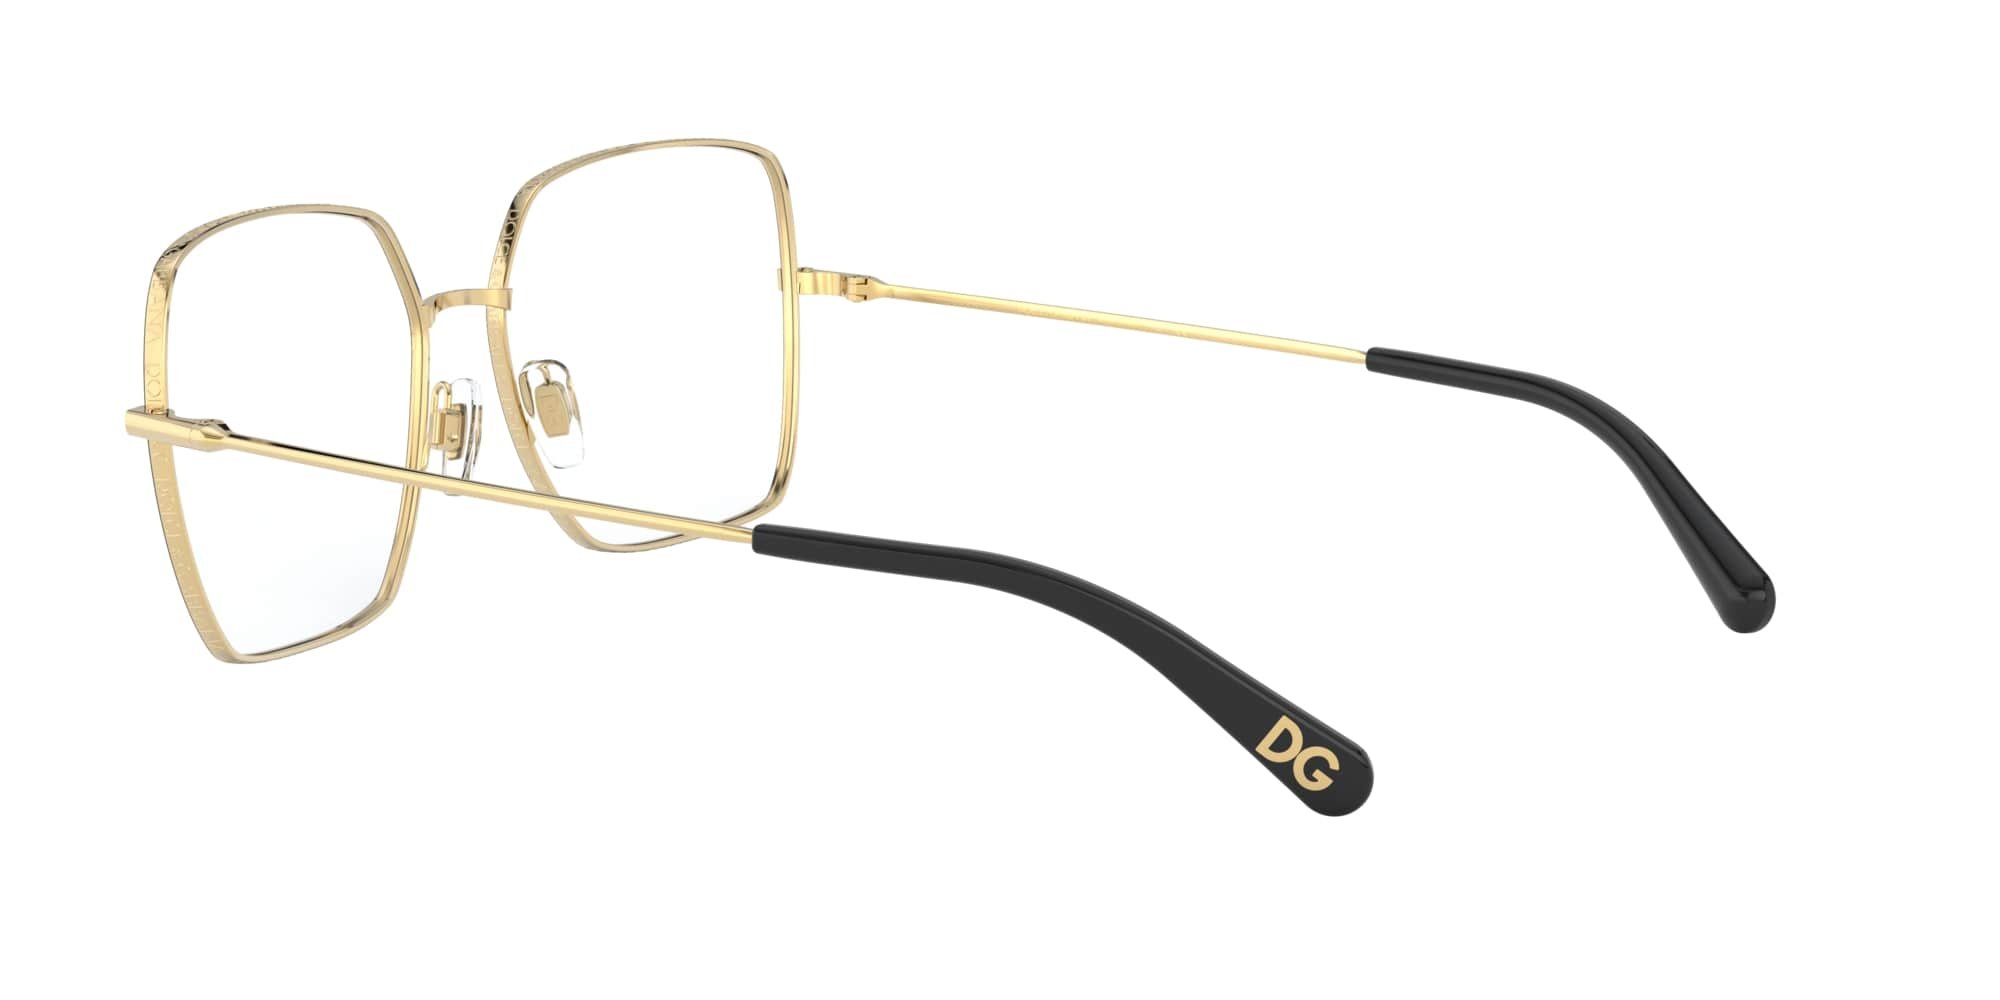 Das Bild zeigt die Korrektionsbrille DG1323 1334 von der Marke D&G in schwarz-gold.